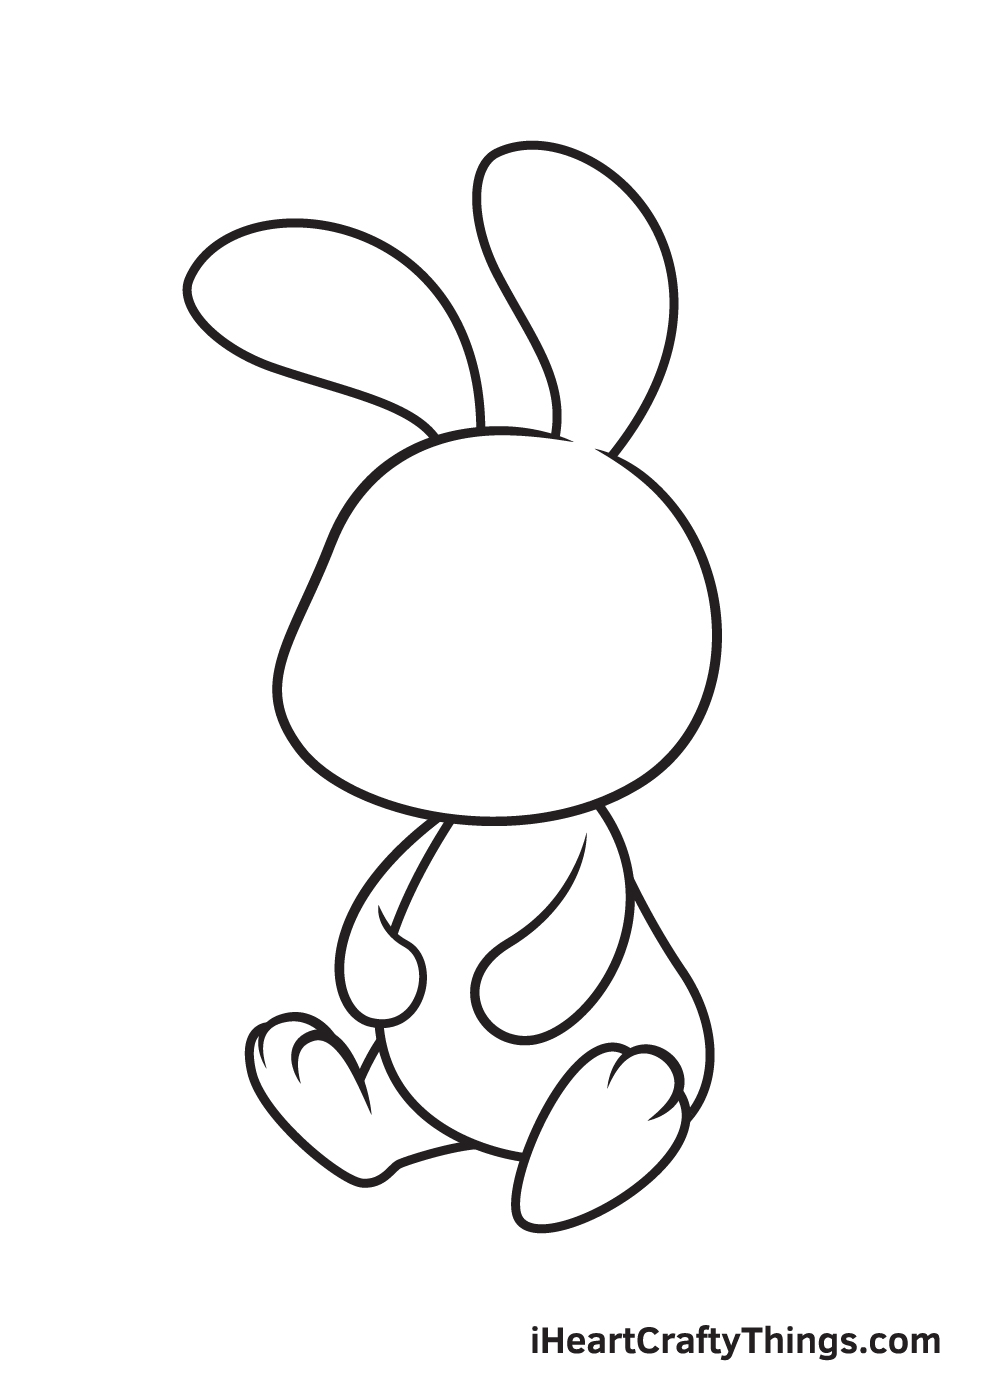 Vẽ chú thỏ - Bước 4